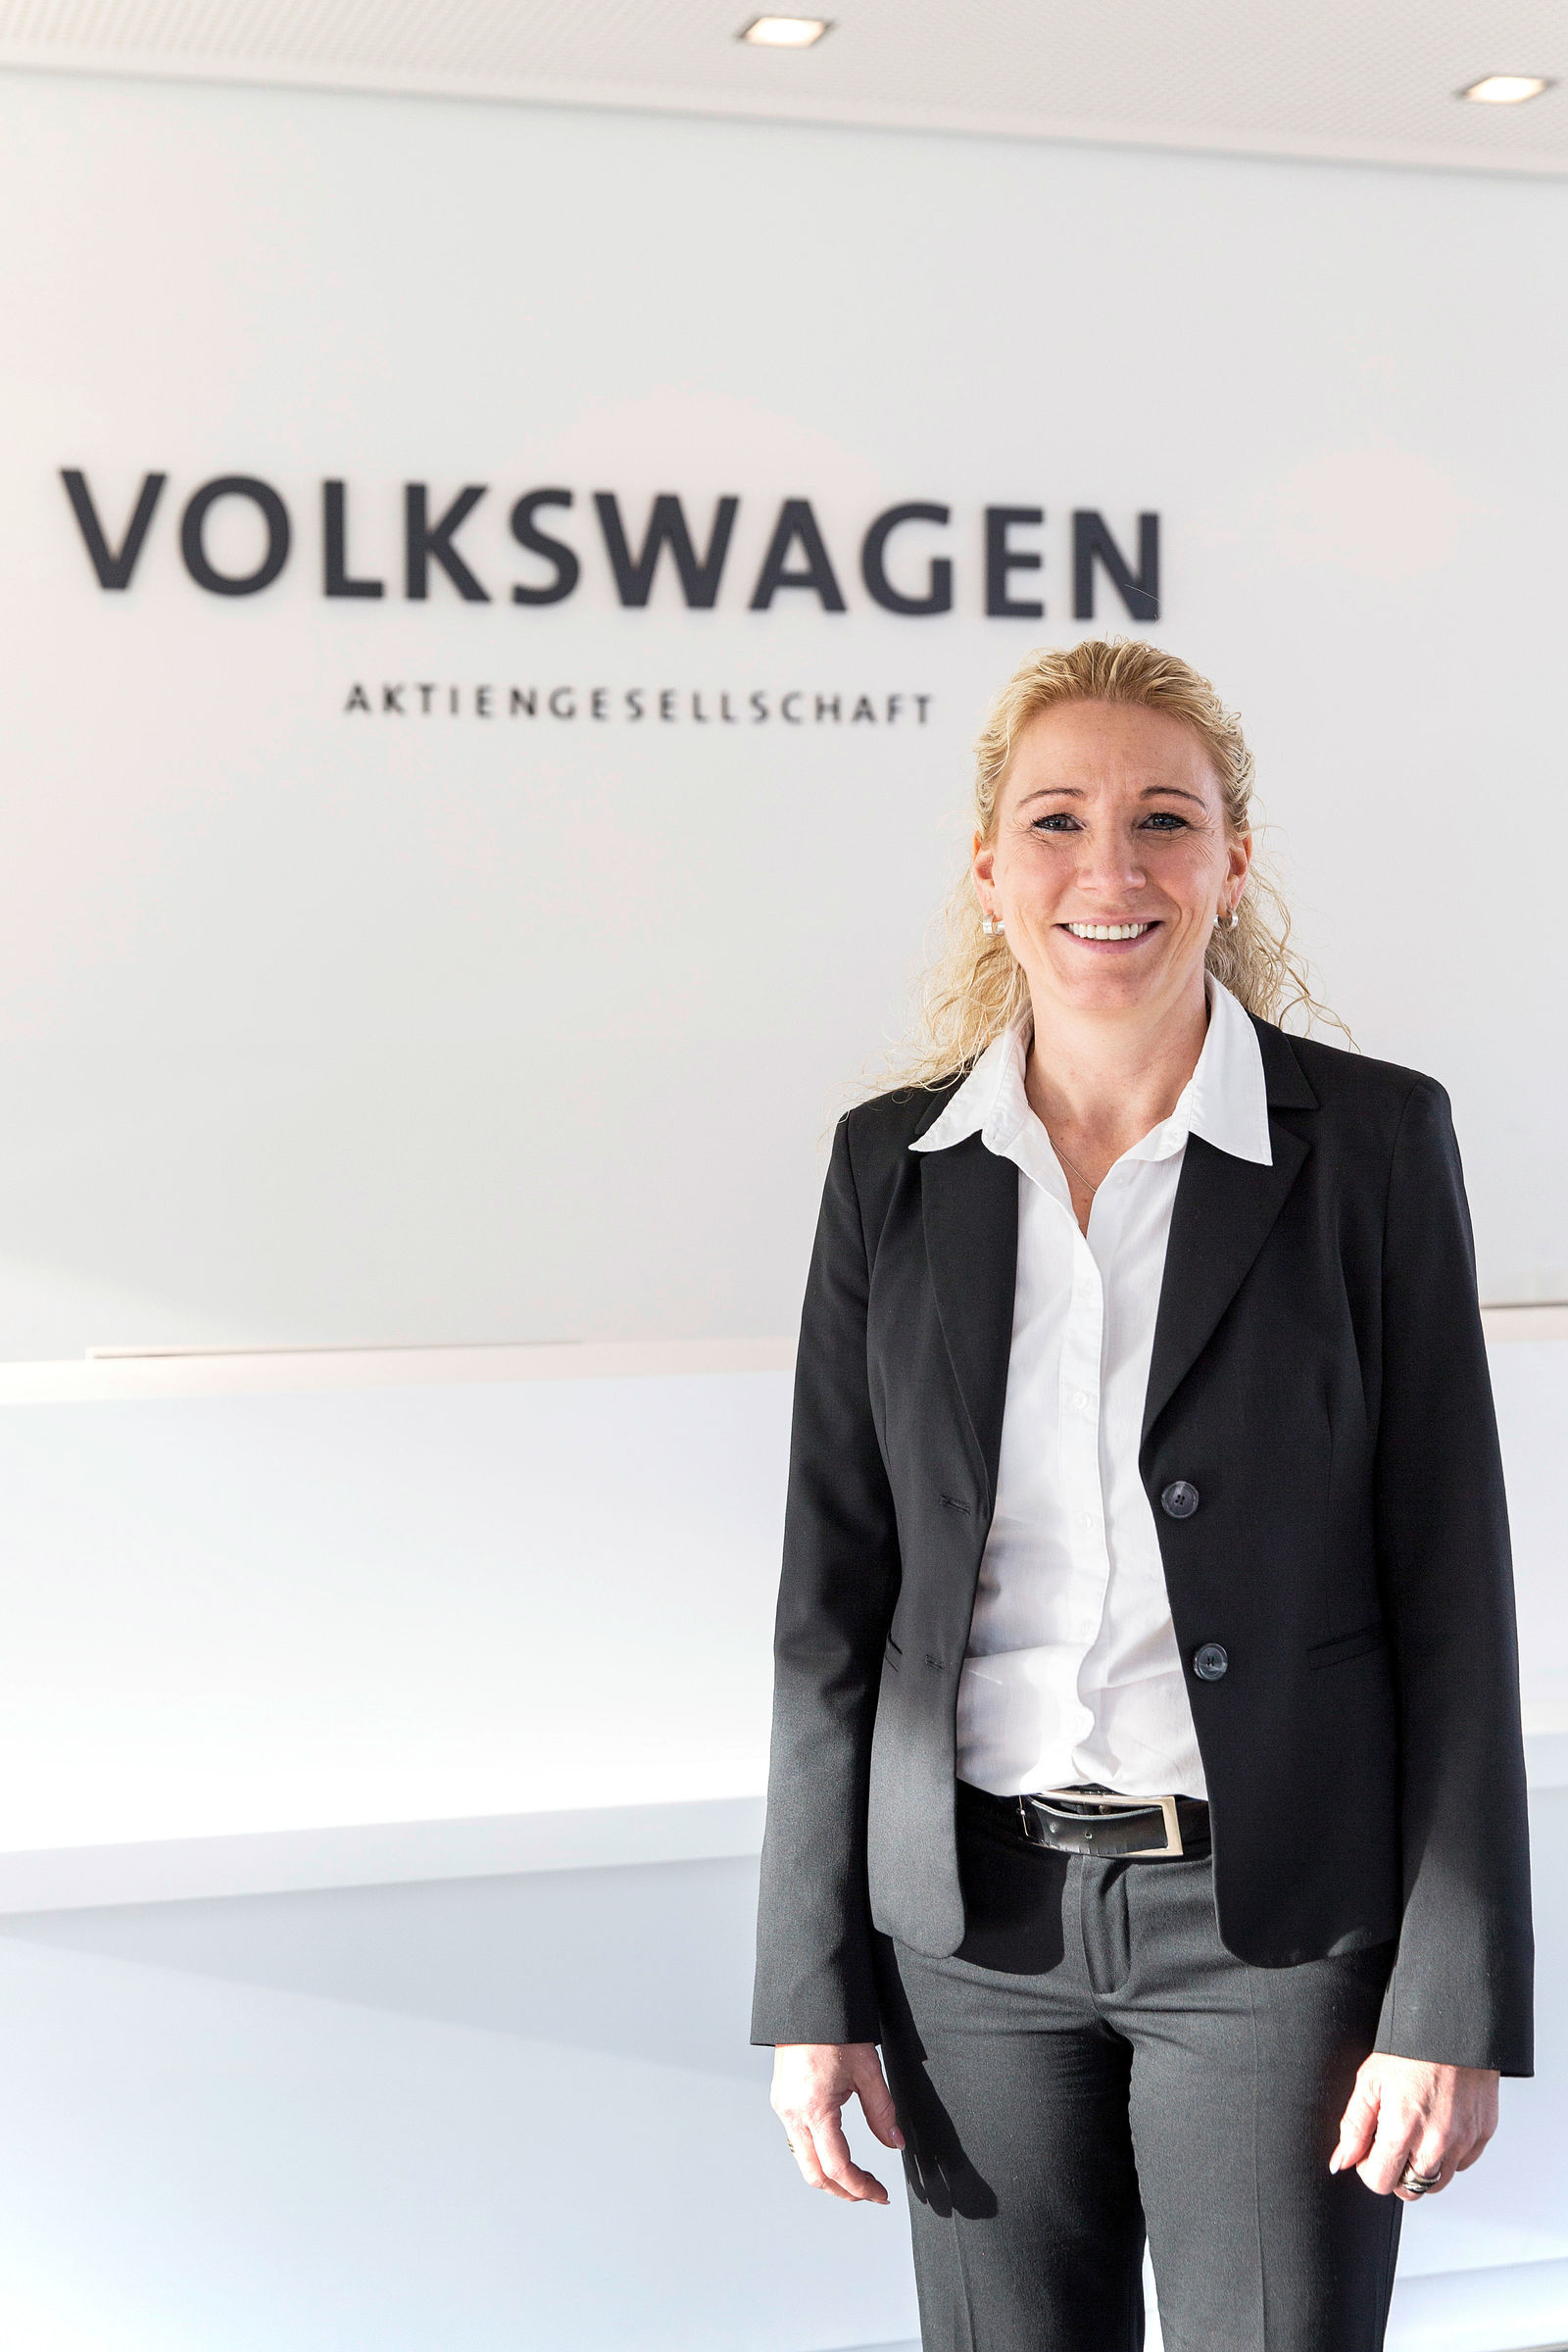 Volkswagen Mitarbeiterin Ines Doberanzke-Milnikel mit Bundesverdienstkreuz ausgezeichnet